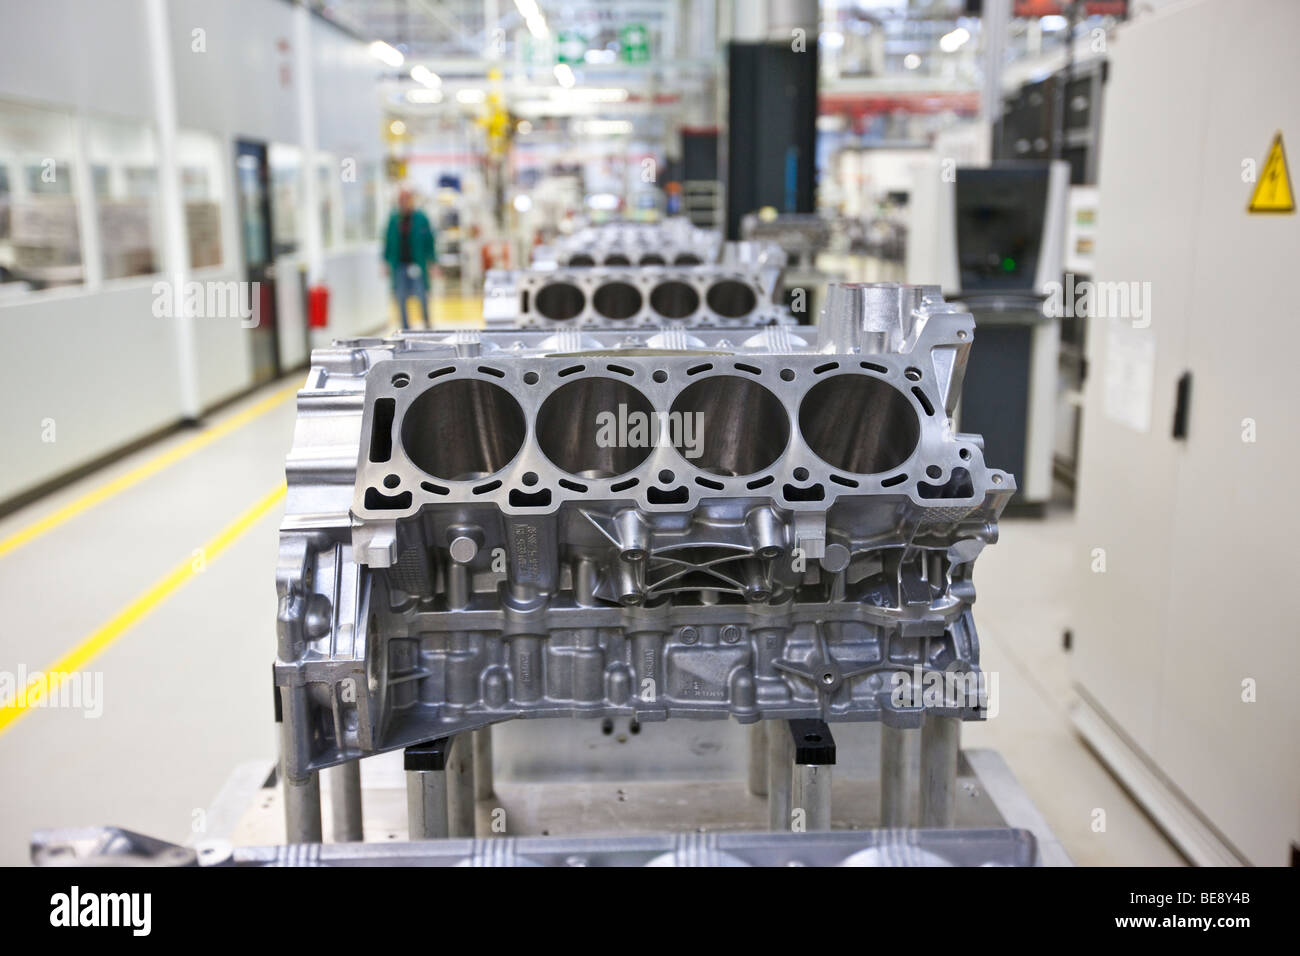 Aston Martin V8 engine, Aston Martin engine plant in Cologne, Rhineland-Palatinate, Germany, Europe Stock Photo